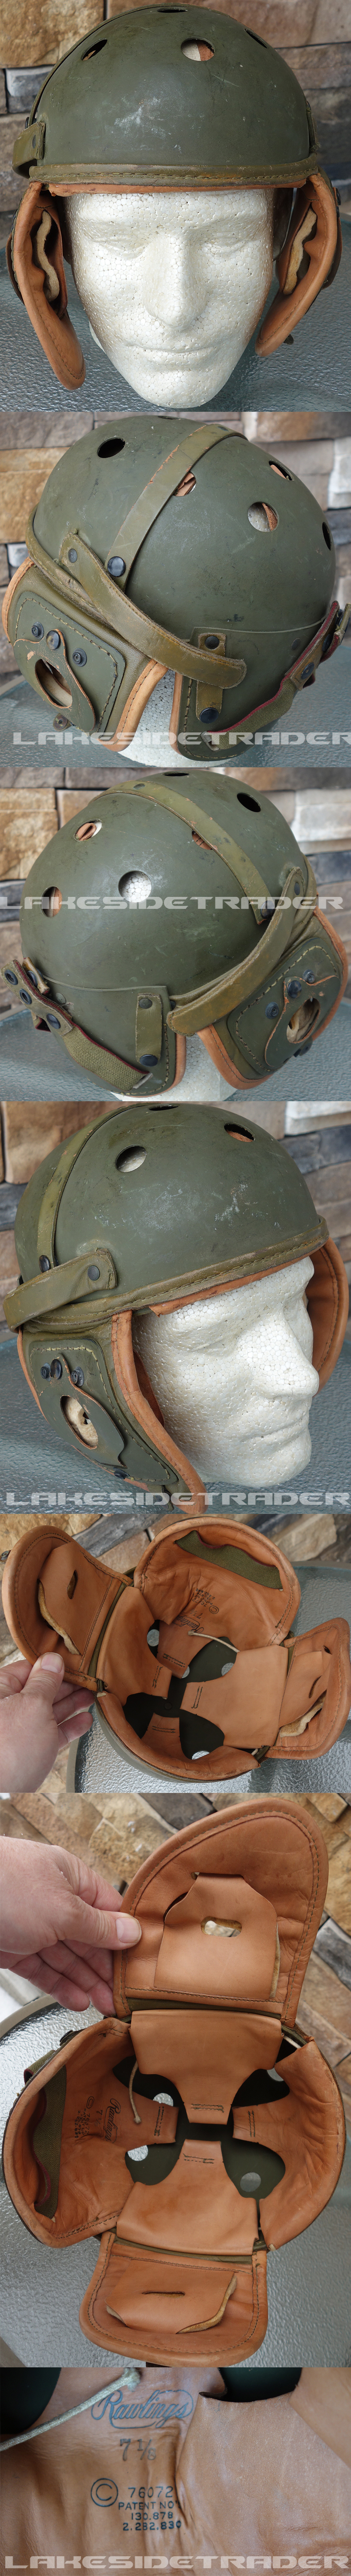 US WWII Tankers Helmet